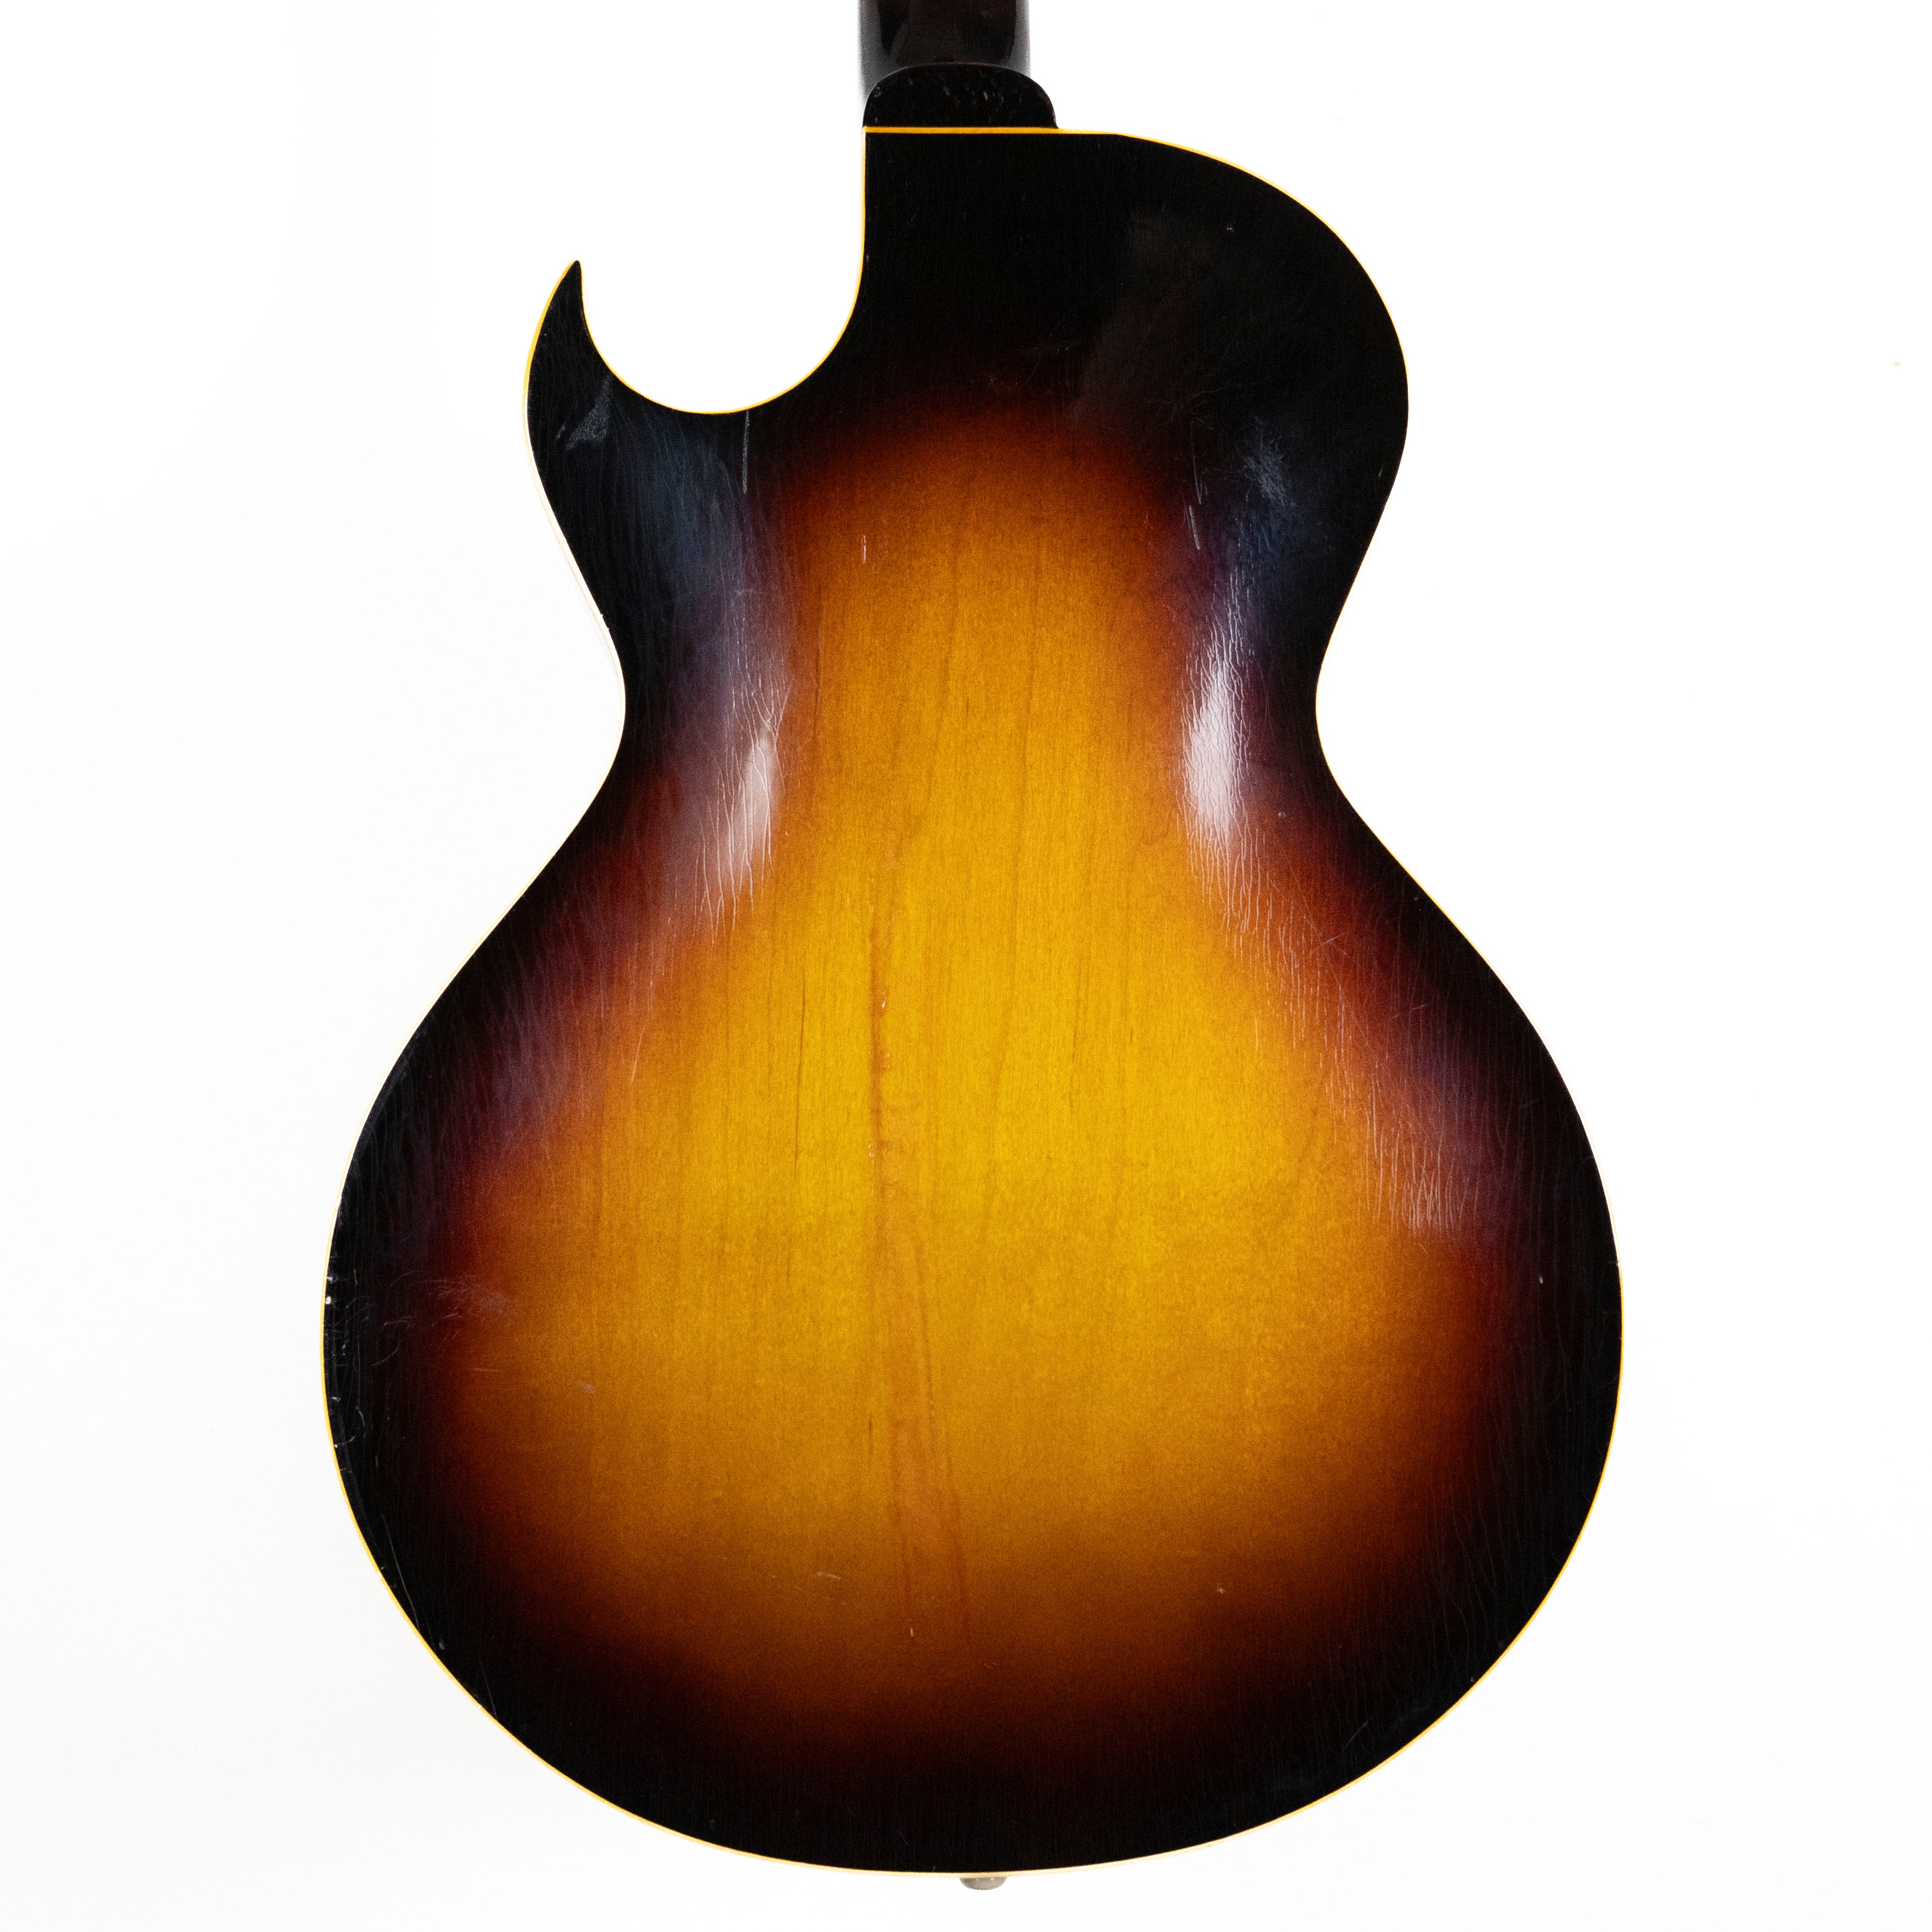 Gibson 1956 ES-140 3/4